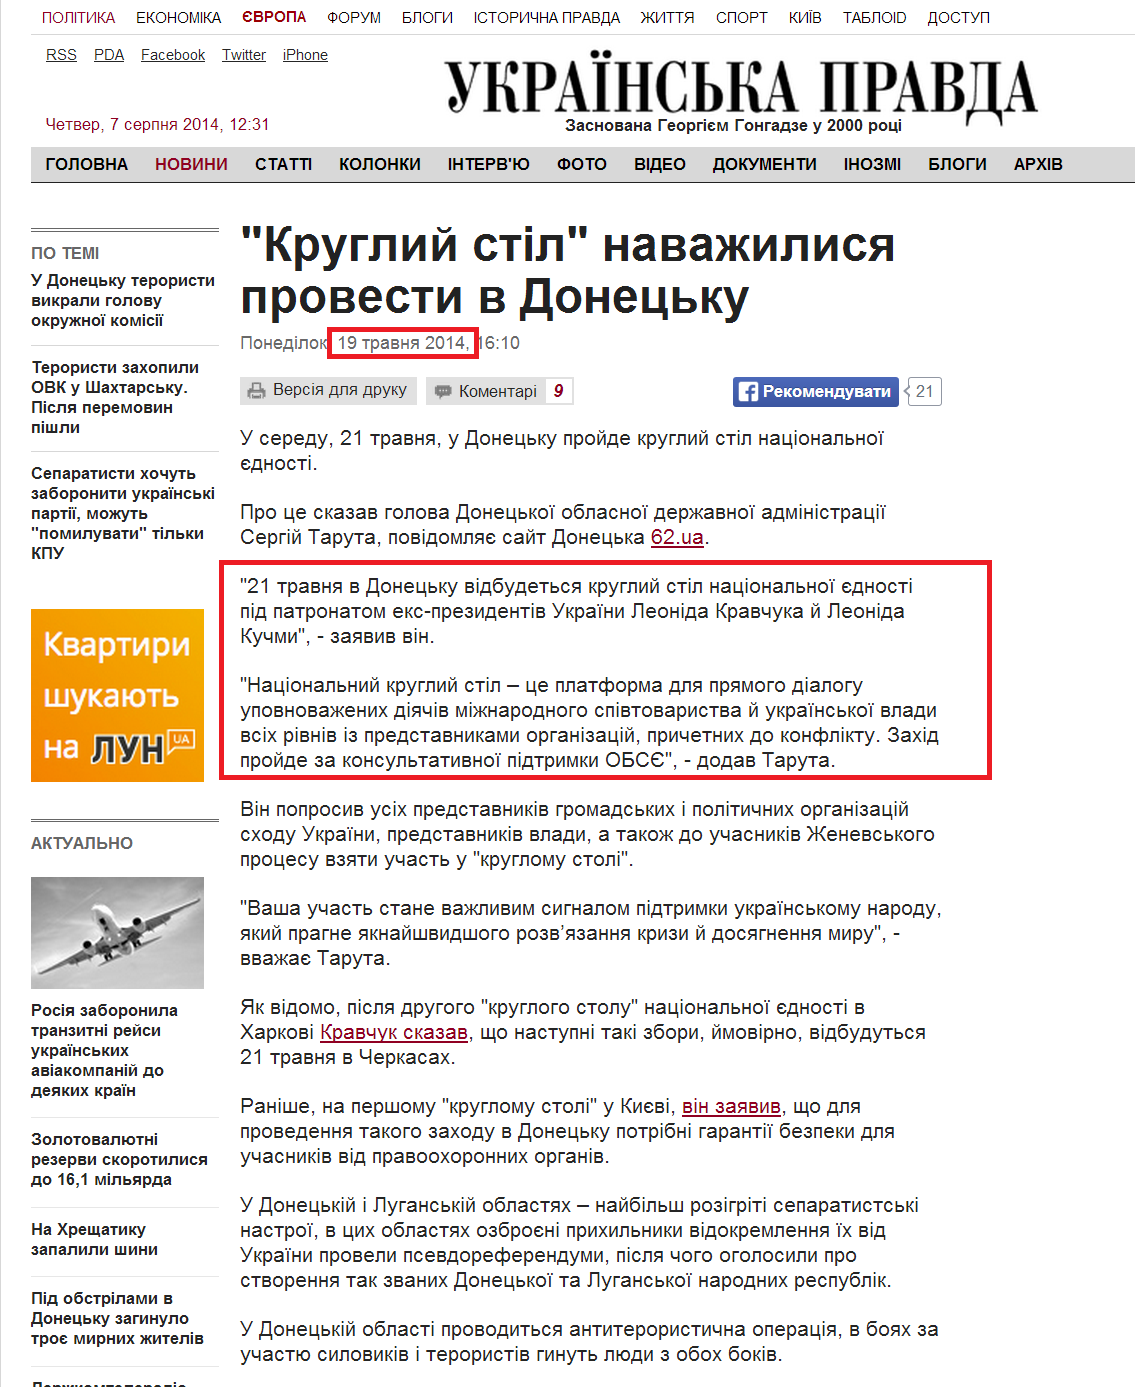 http://www.pravda.com.ua/news/2014/05/19/7025778/